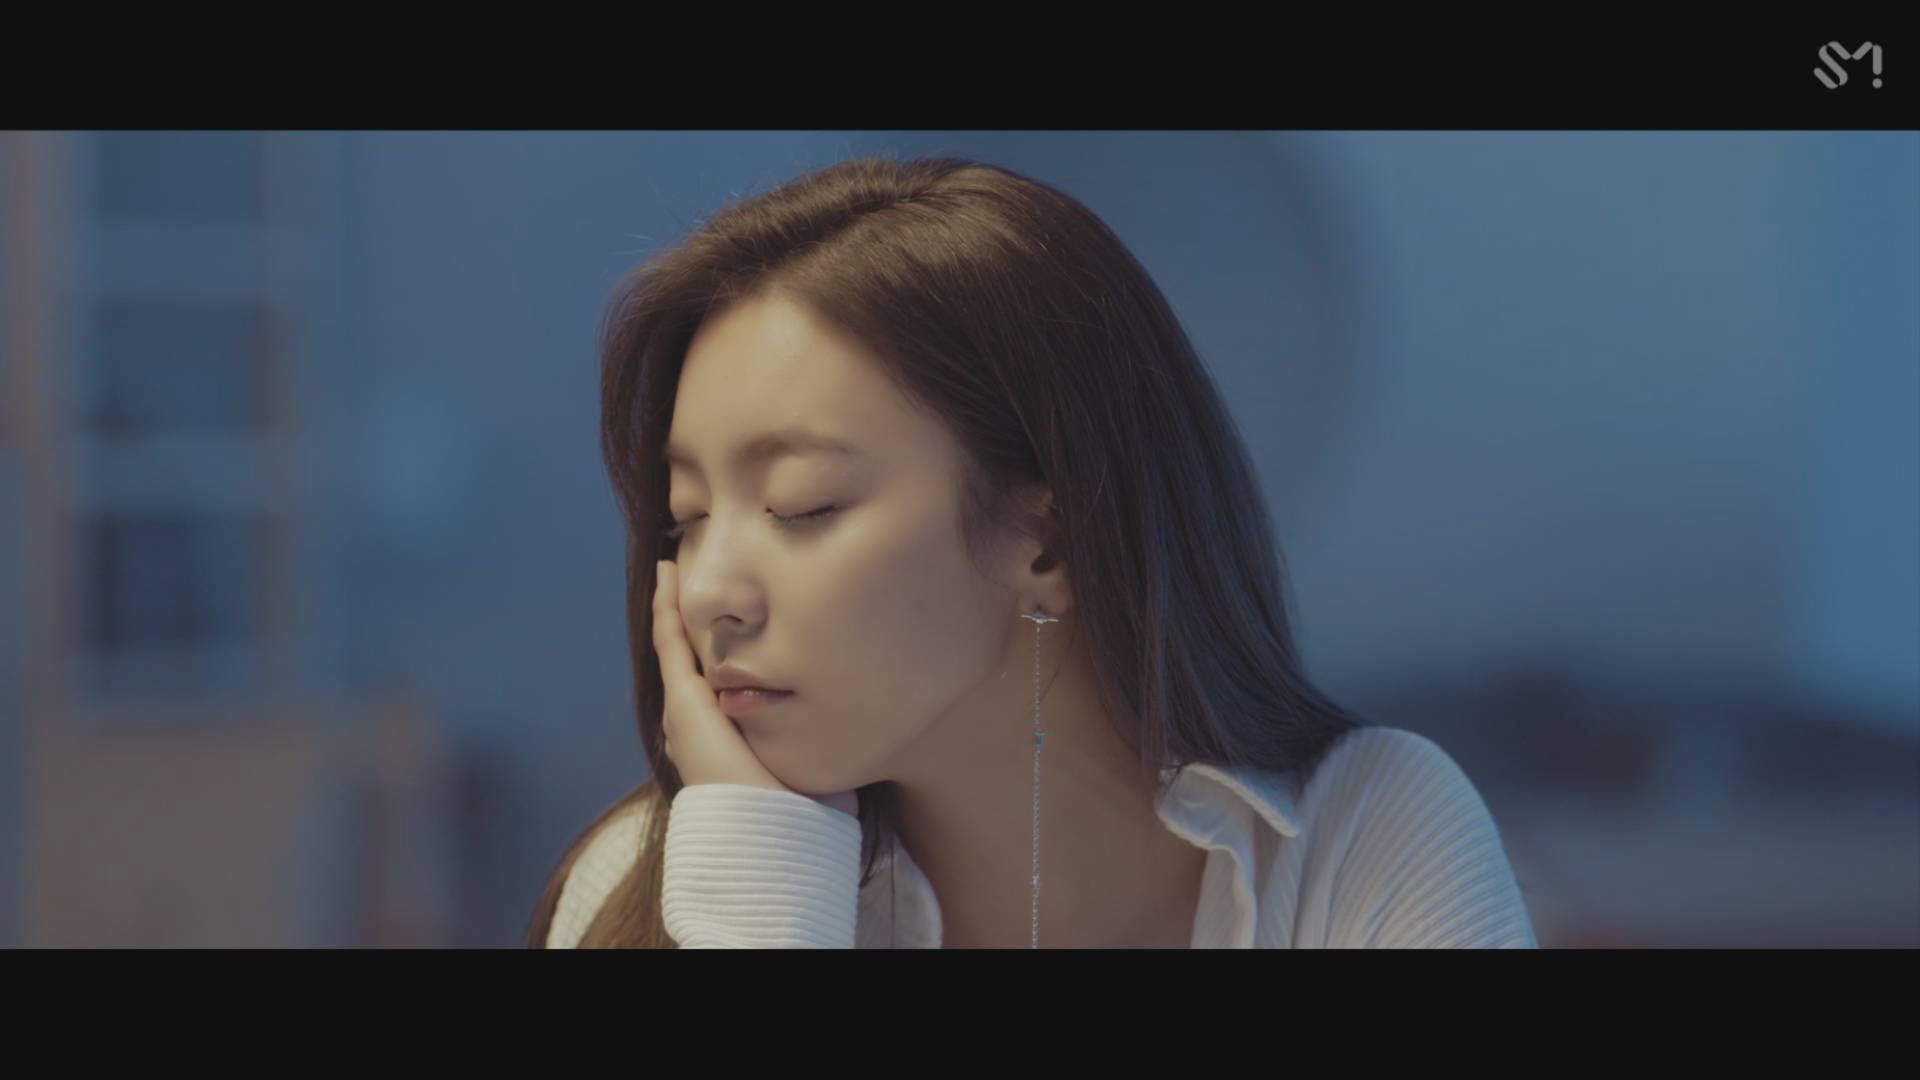 LUNA 루나 '그런 밤 (Night Reminiscin’) (With 양다일)' MV